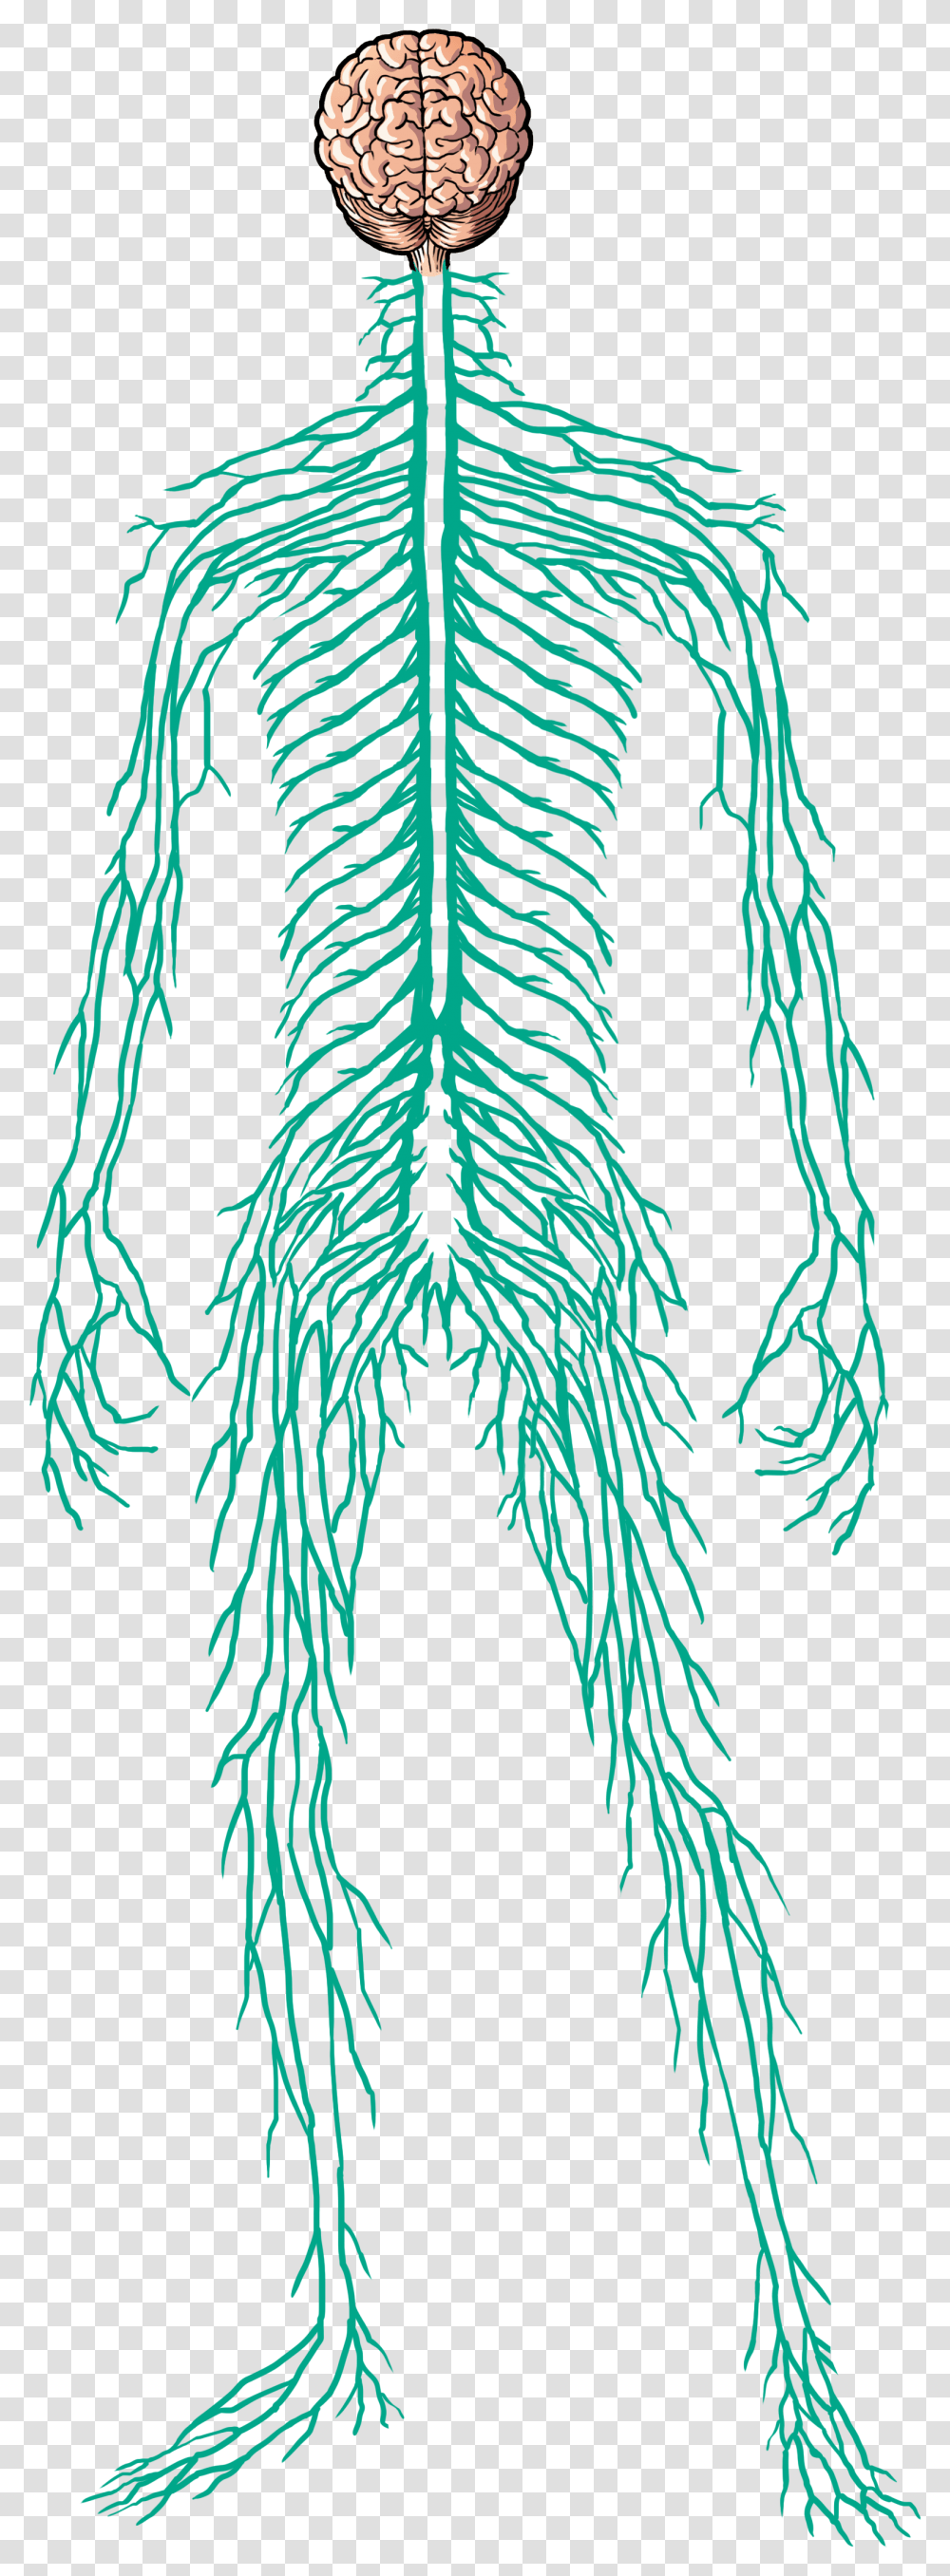 Human Nervous System, Tree, Plant, Conifer, Leaf Transparent Png